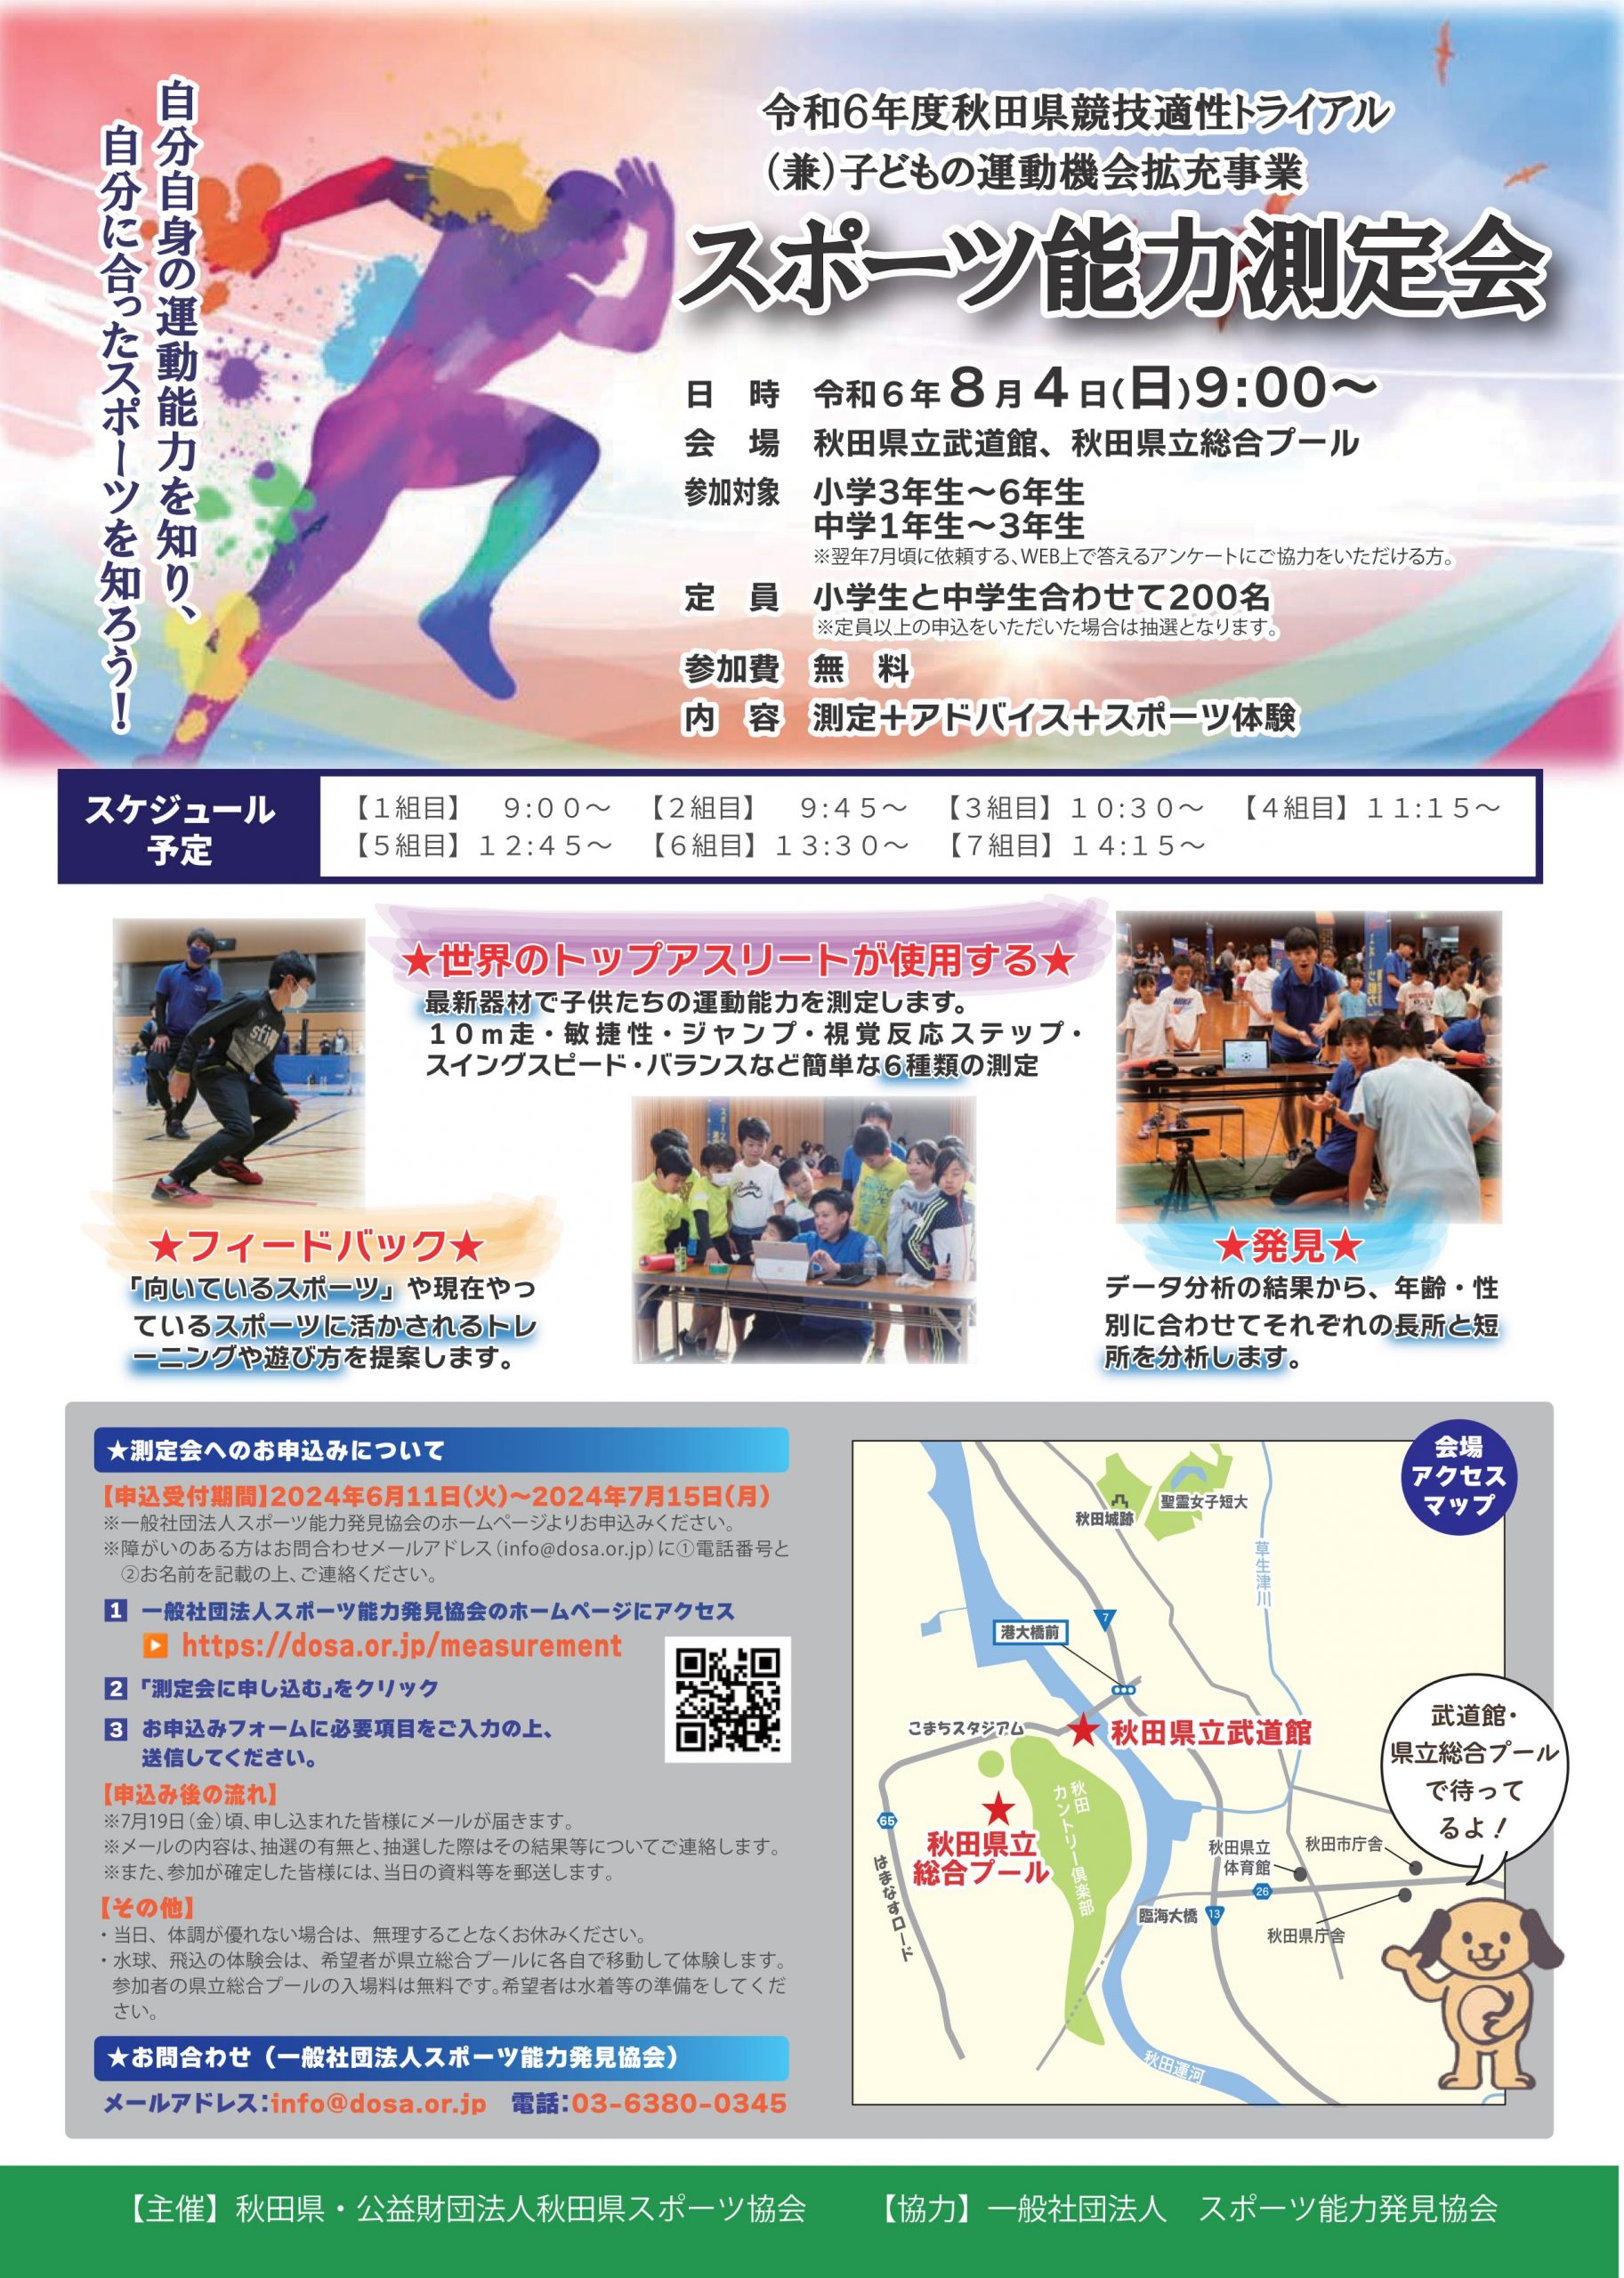 2024/8/4 スポーツ能力測定会＆スポーツ体験会 in 秋田を開催します。